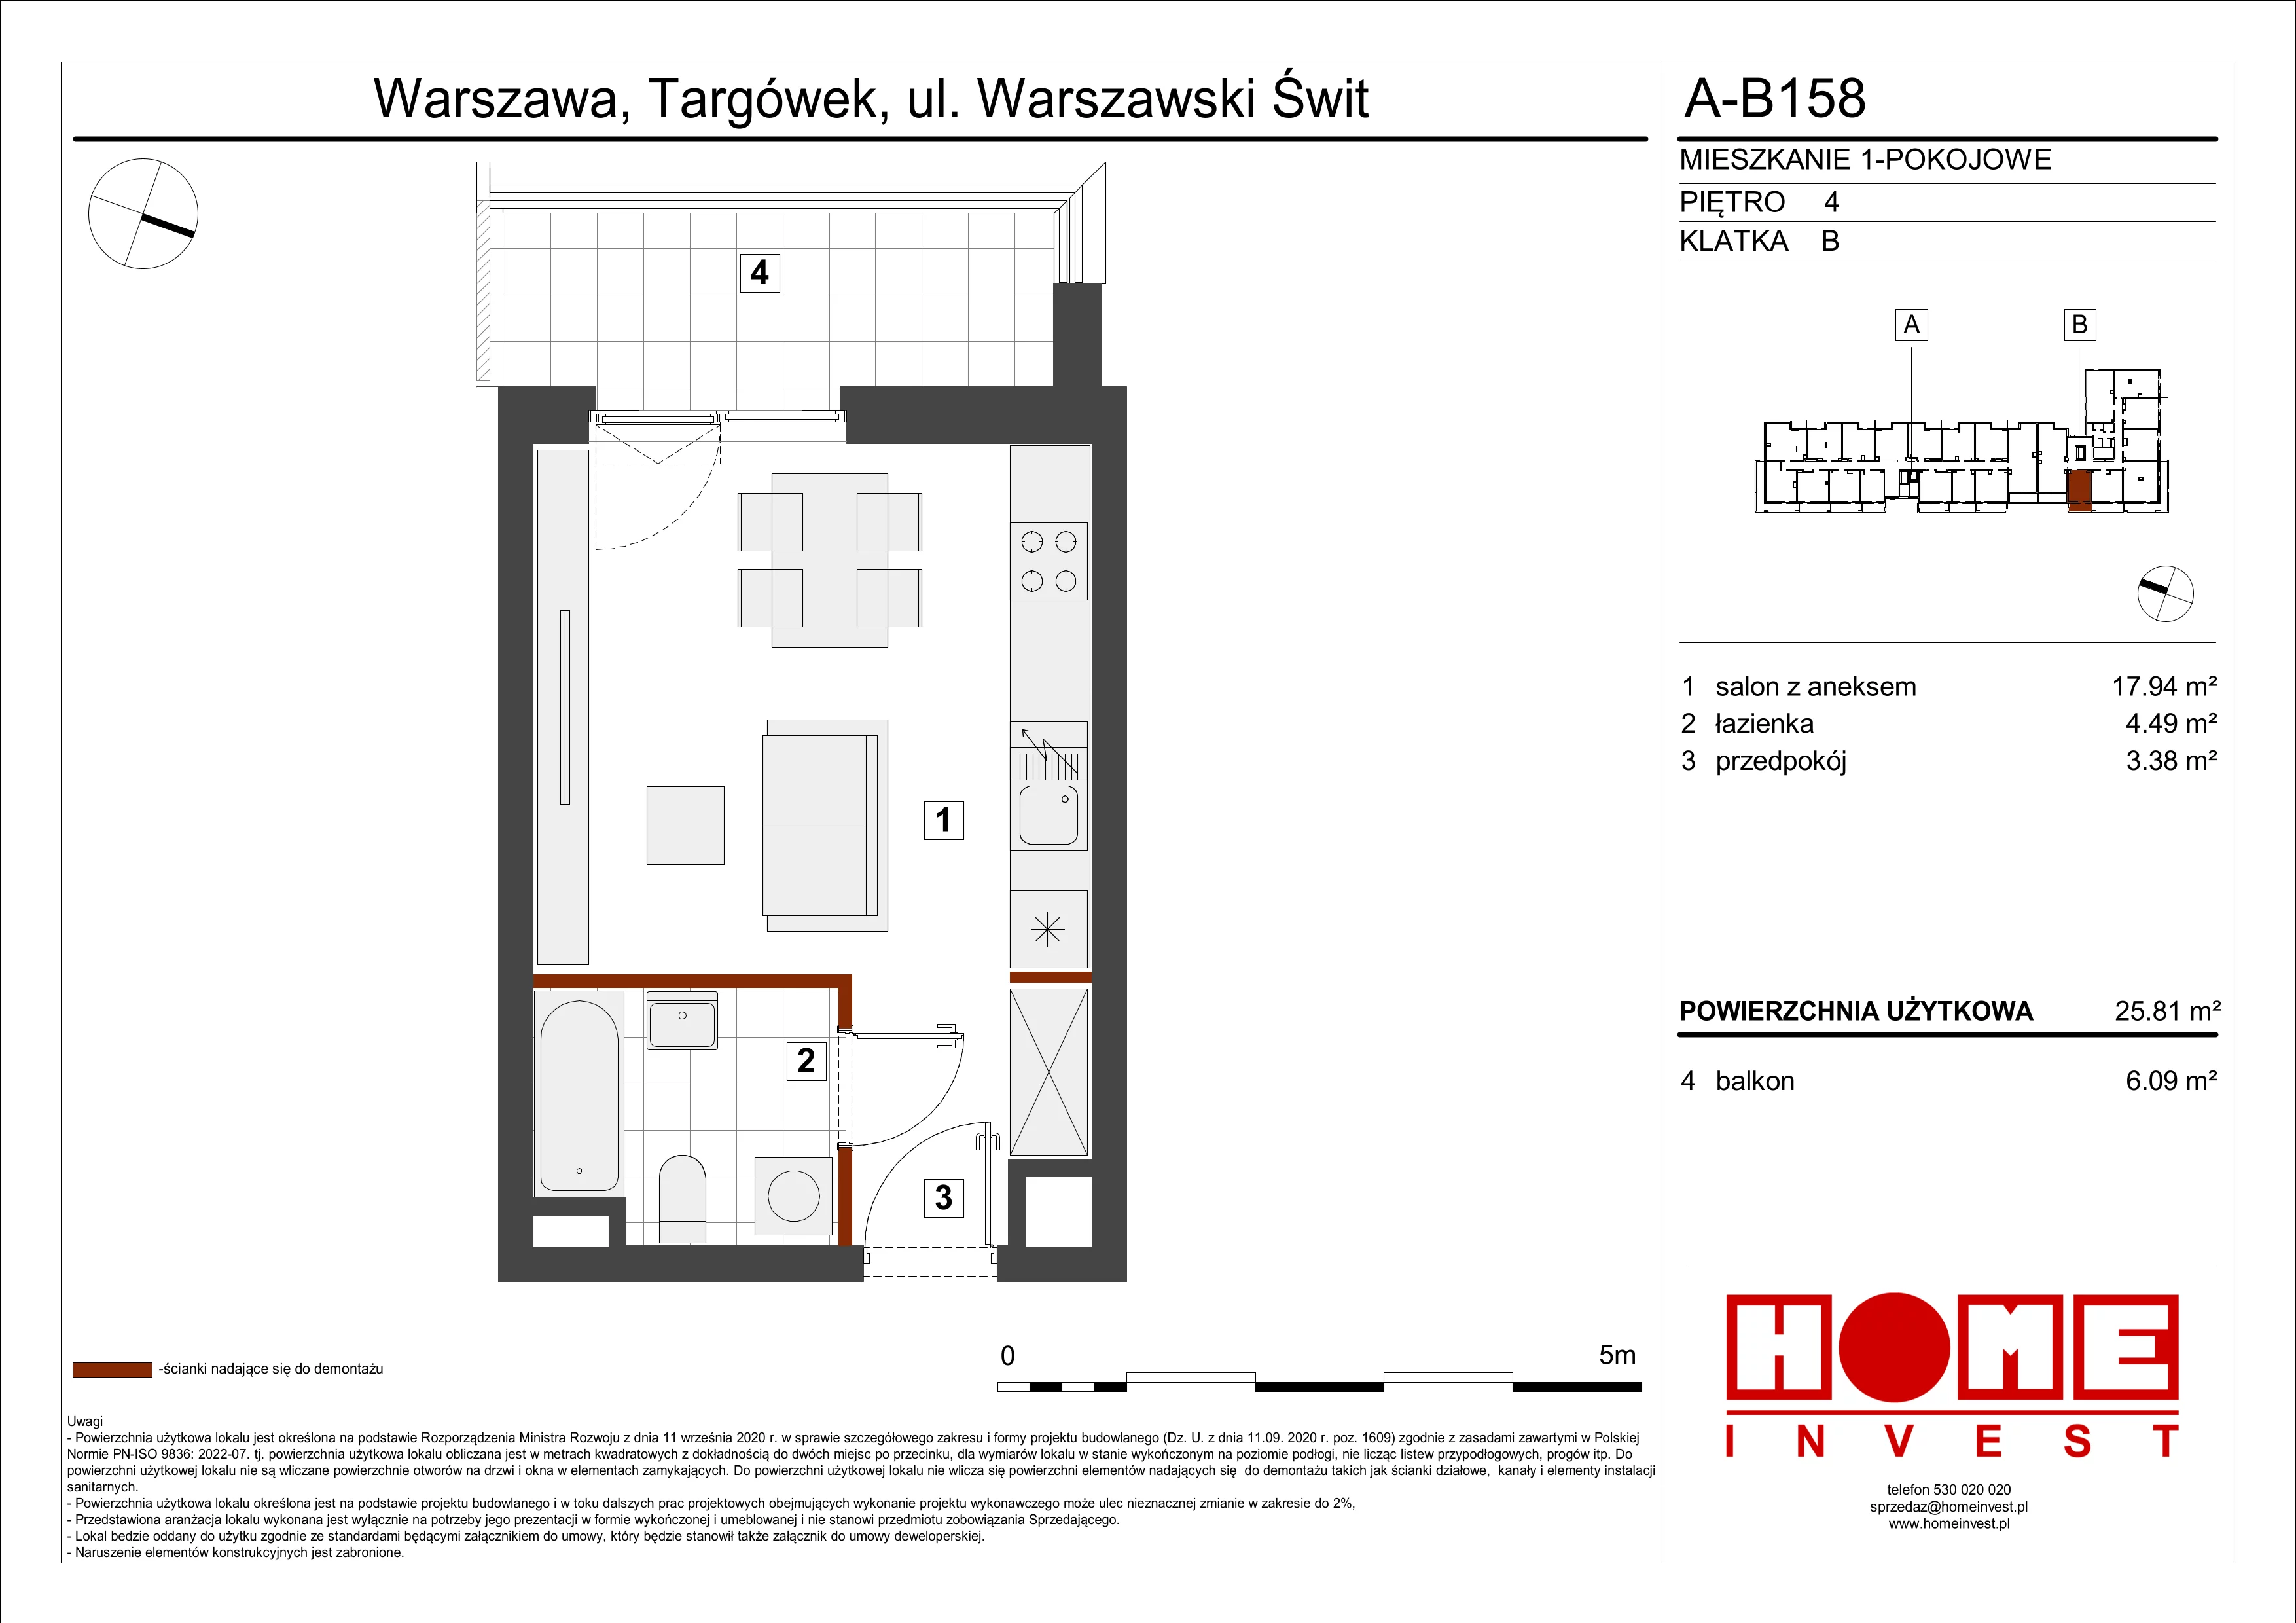 Mieszkanie 25,81 m², piętro 4, oferta nr A-B158, Warszawski Świt, Warszawa, Targówek, Bródno, ul. Warszawski Świt 5